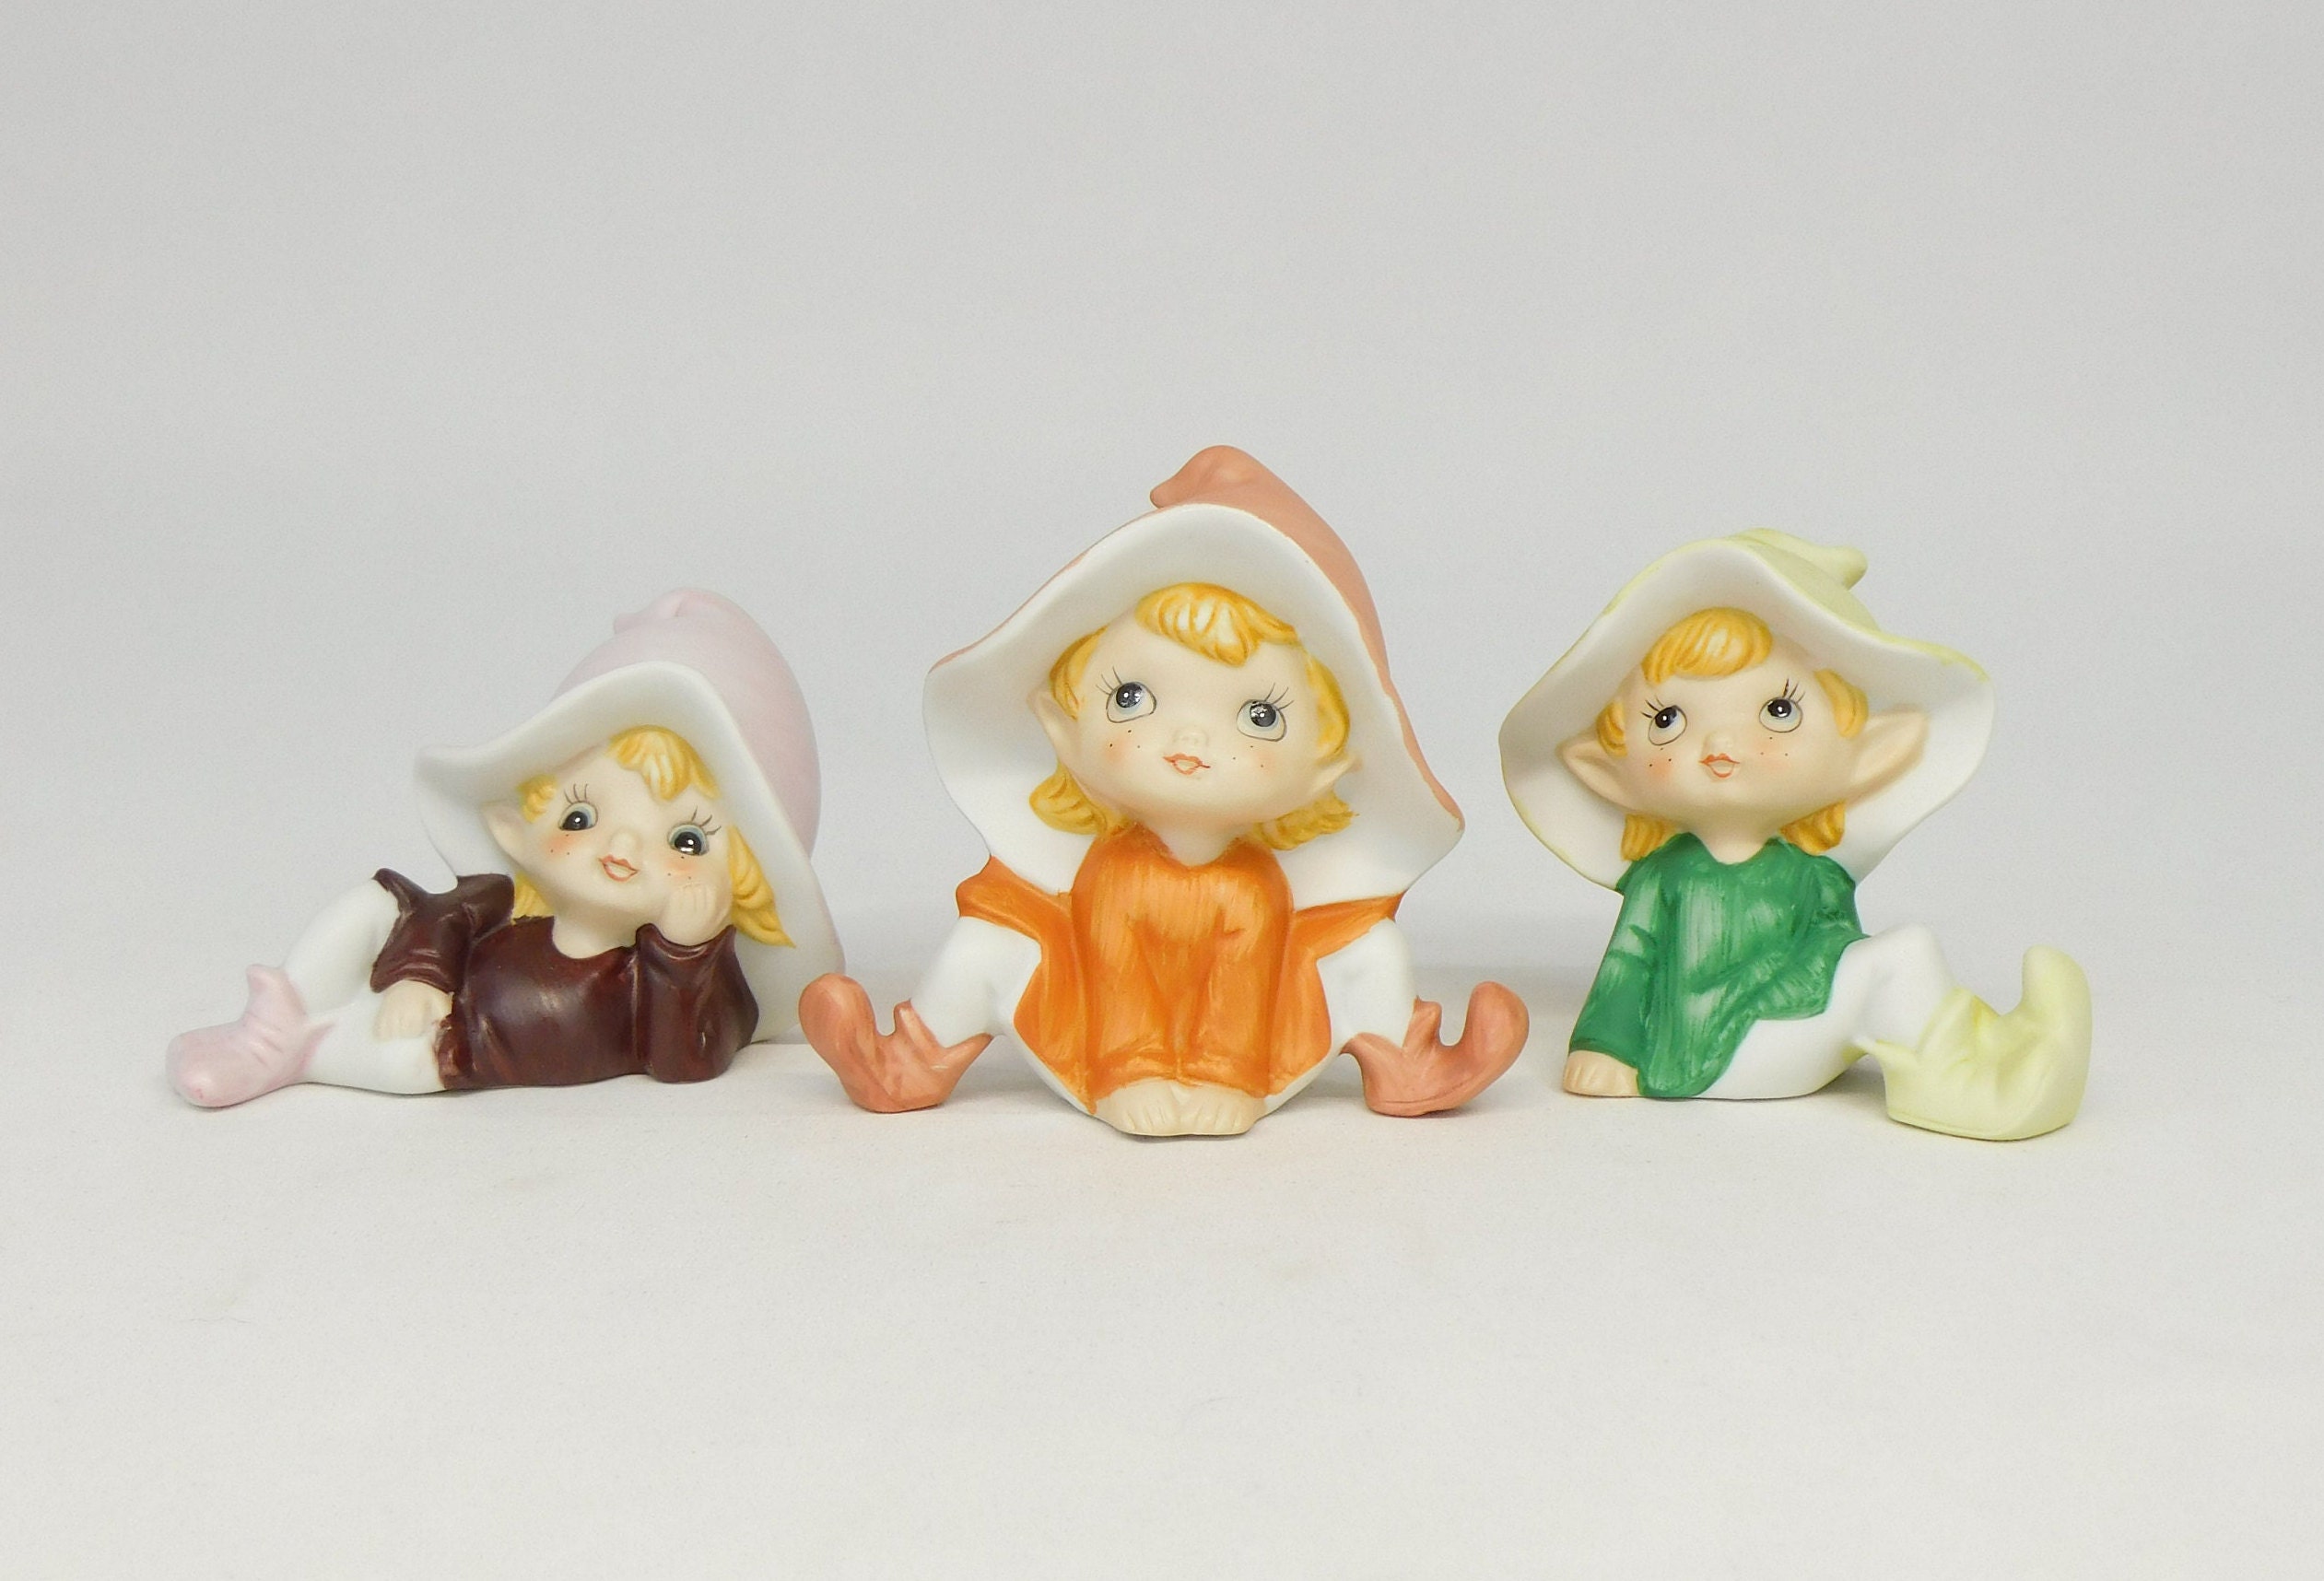 Pixie Elf Figurines, Home Interiors, HOMCO, Porcelain Elf, Item